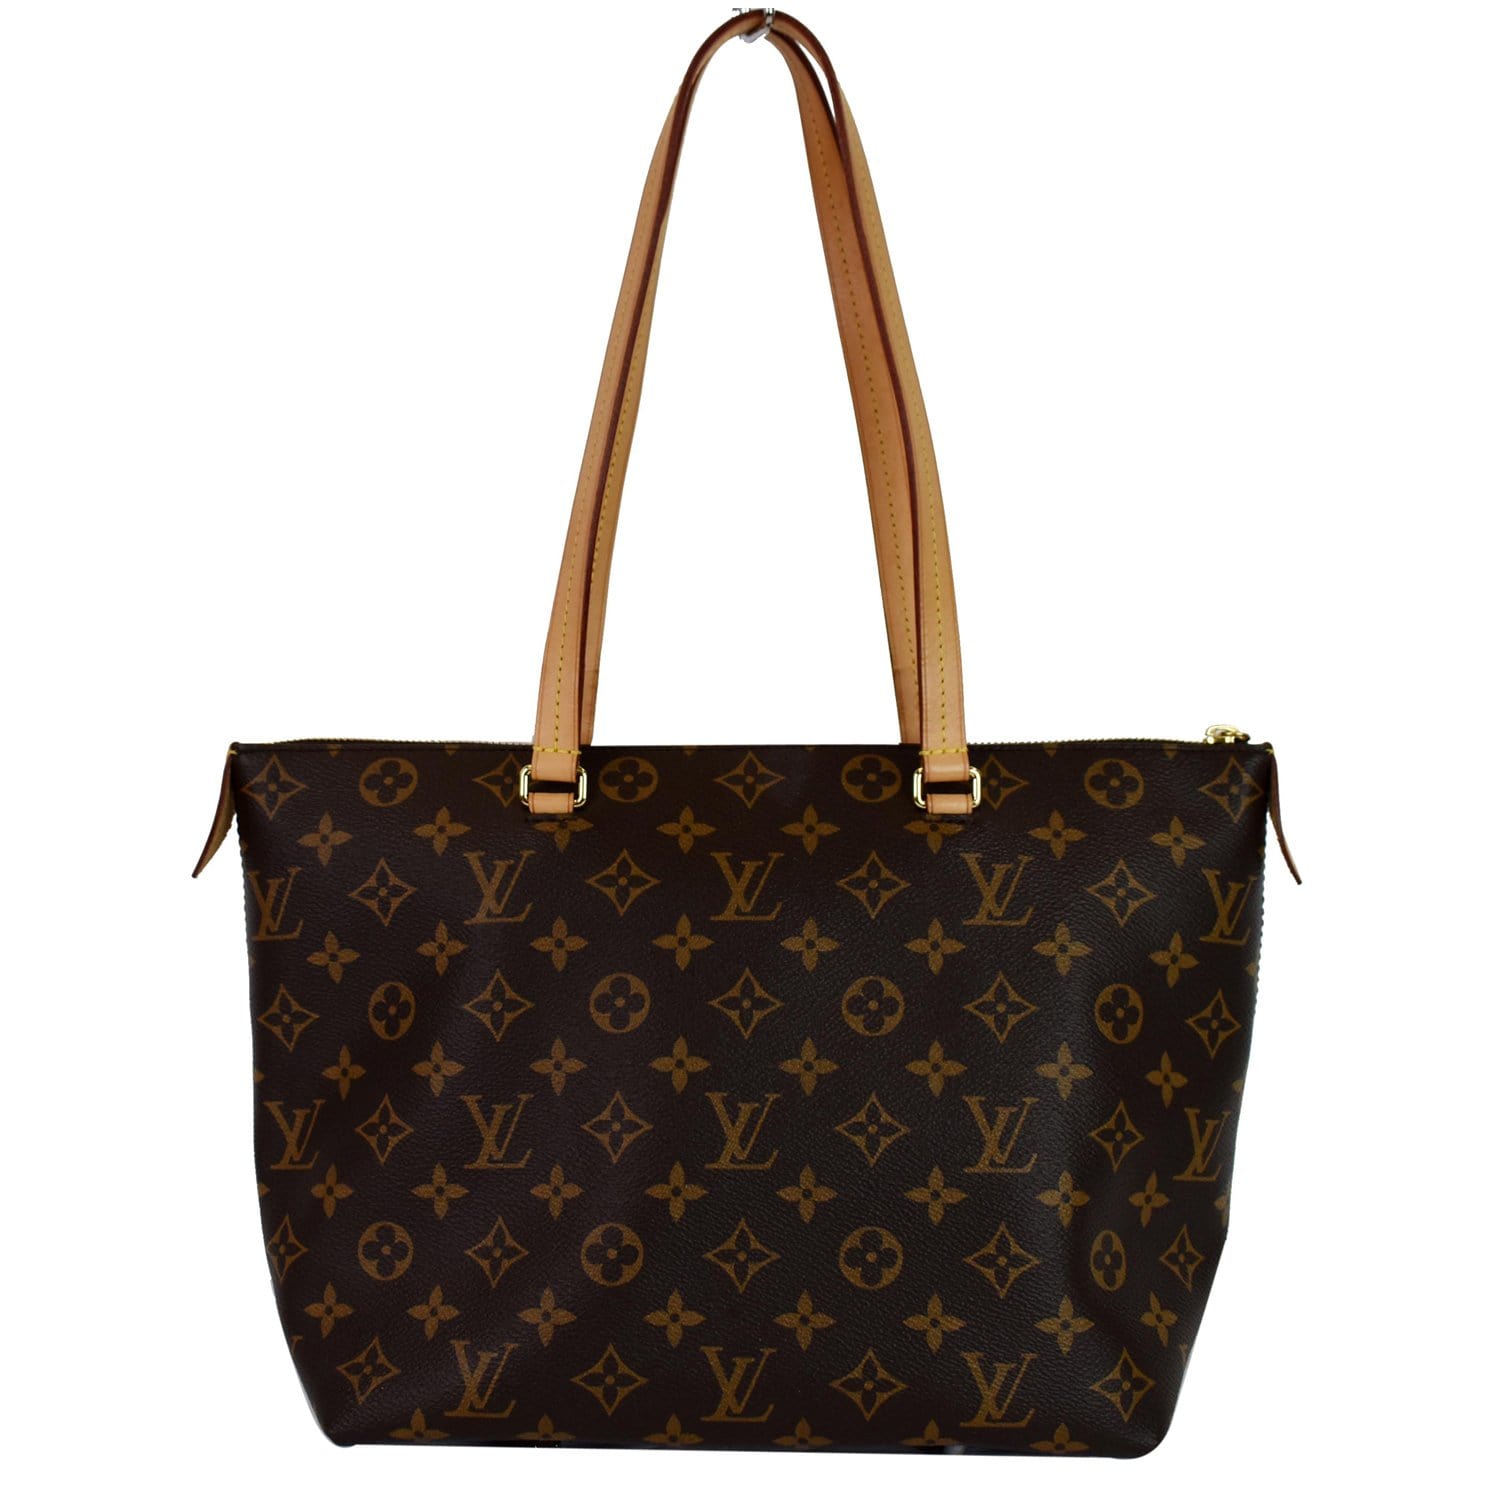 Louis Vuitton, Bags, Almost New Authentic Louis Vuitton Iena Pm